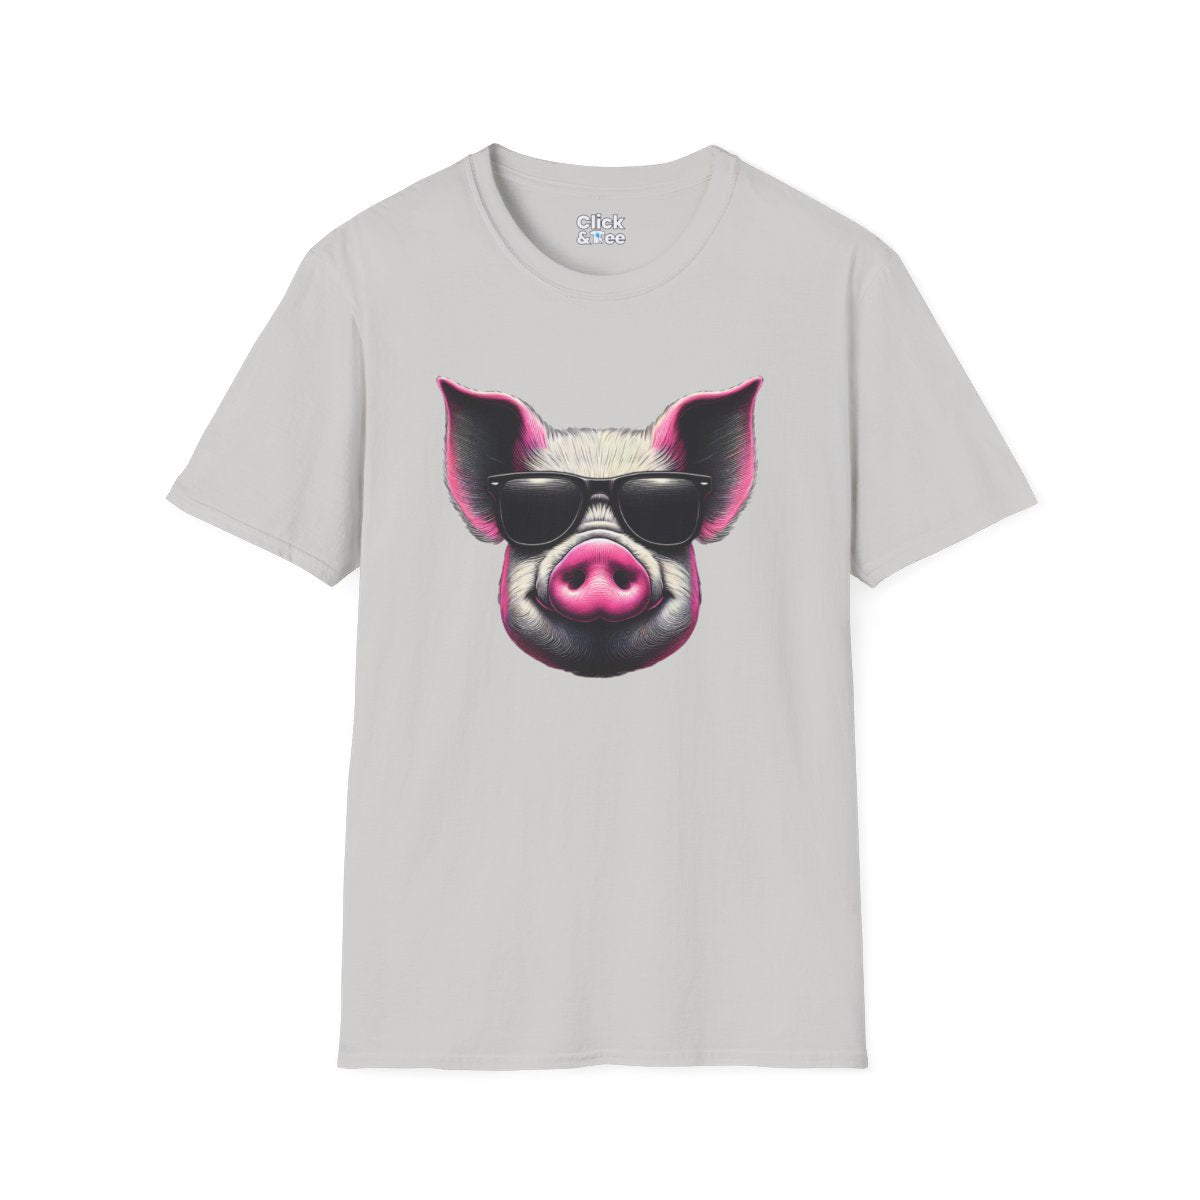 Graphic ArtPink Pig Face Unique T-Shirt  Image 5